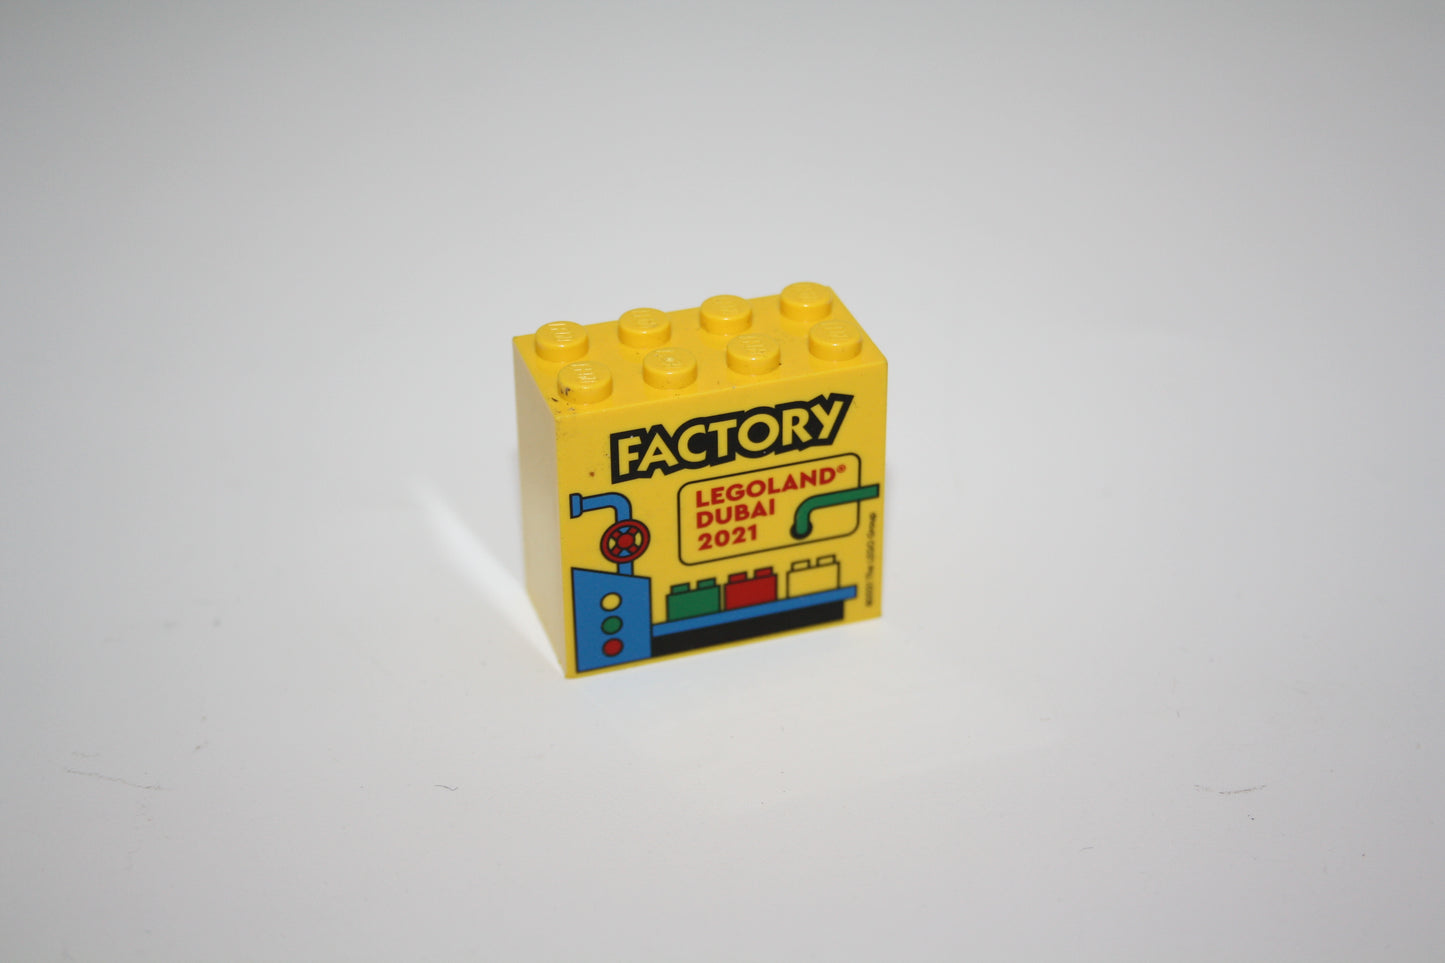 Lego - Dubai 2021 -  Sammelsteine - 2x4x2 Stein - Motivstein